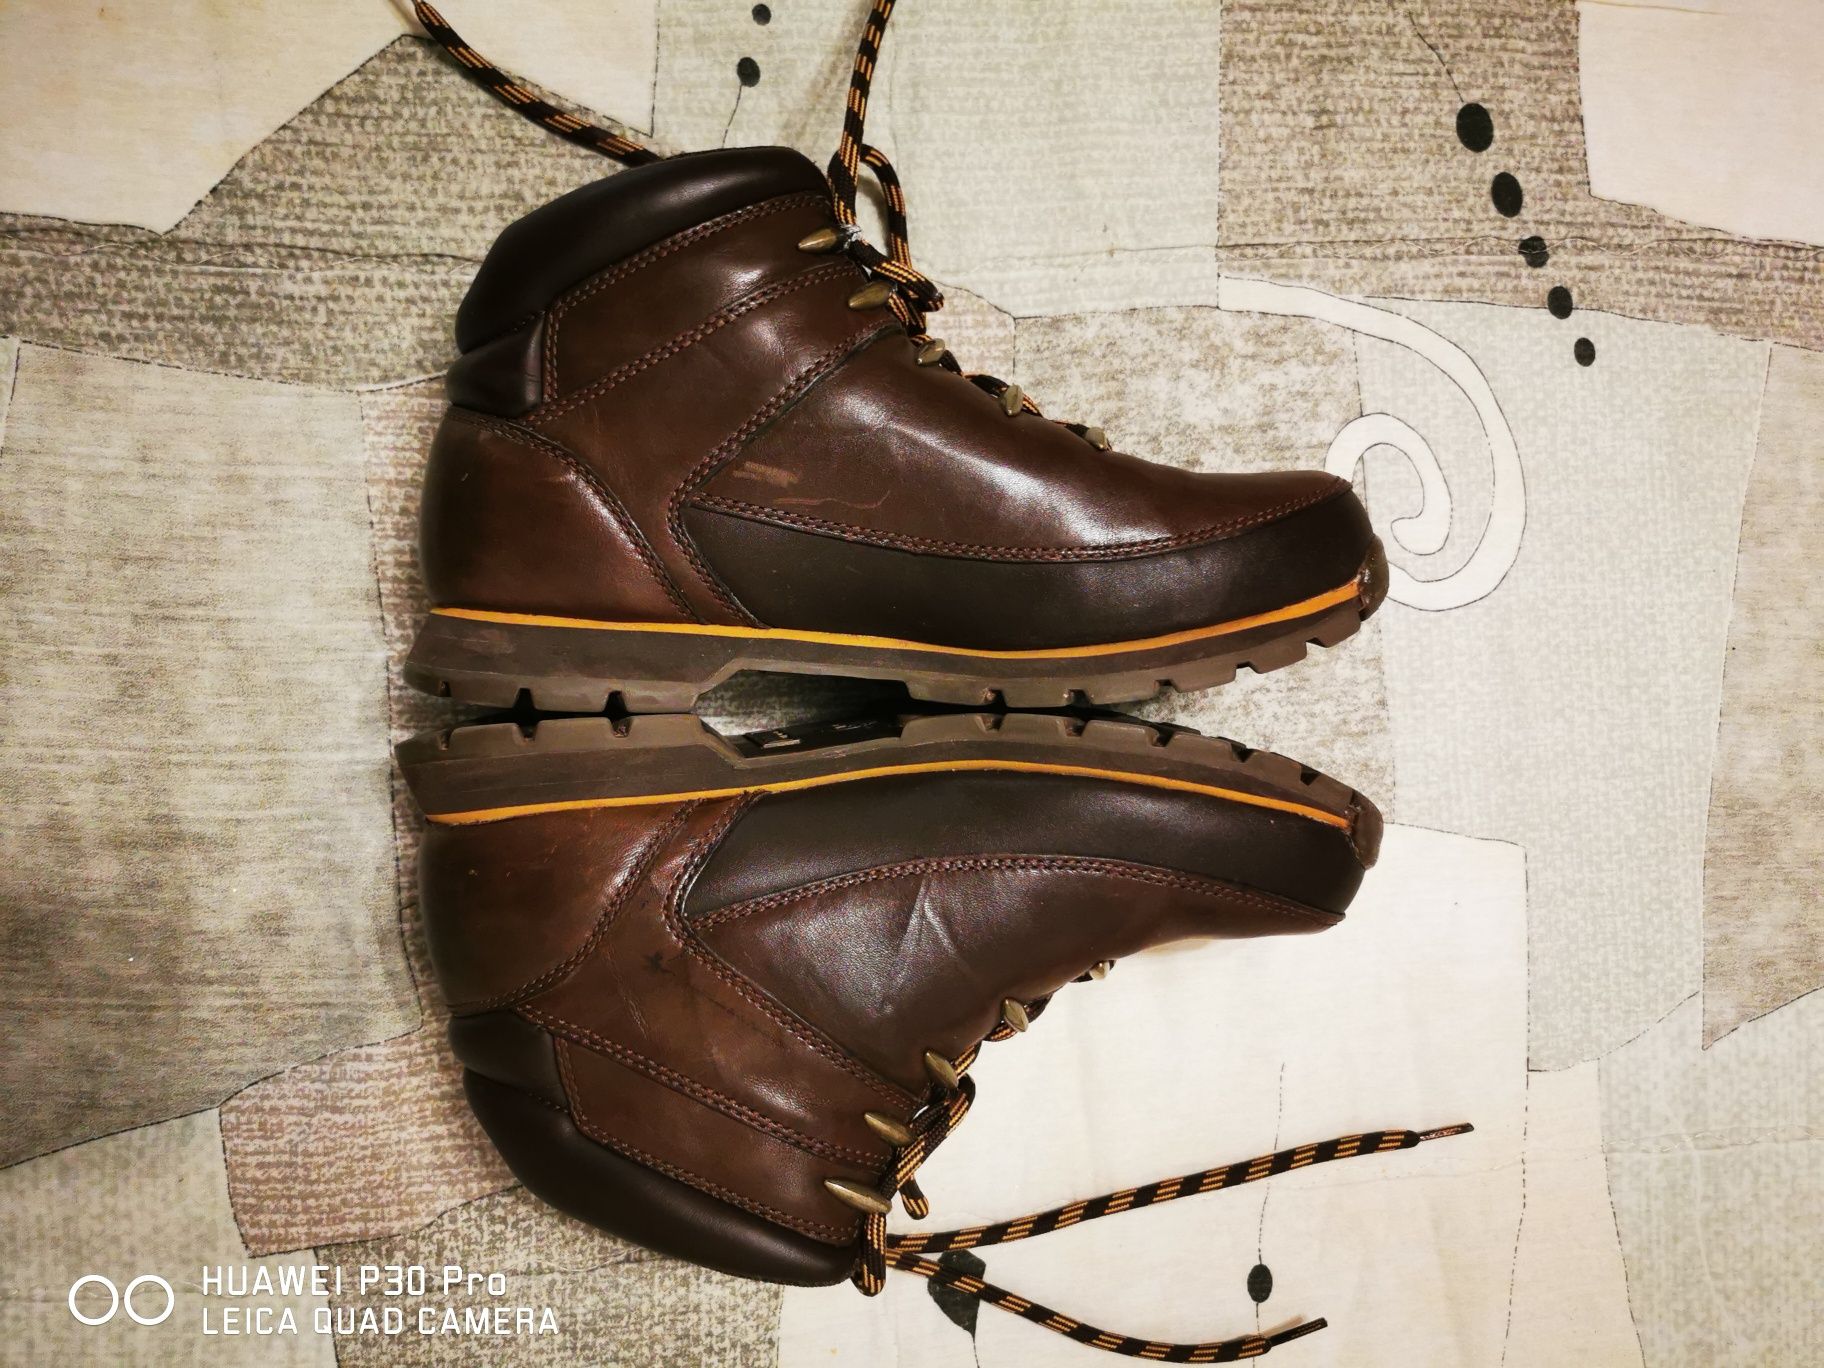 Мъжки зимни обувки/боти на фирмата Timberland, кожени, номер 41,5.